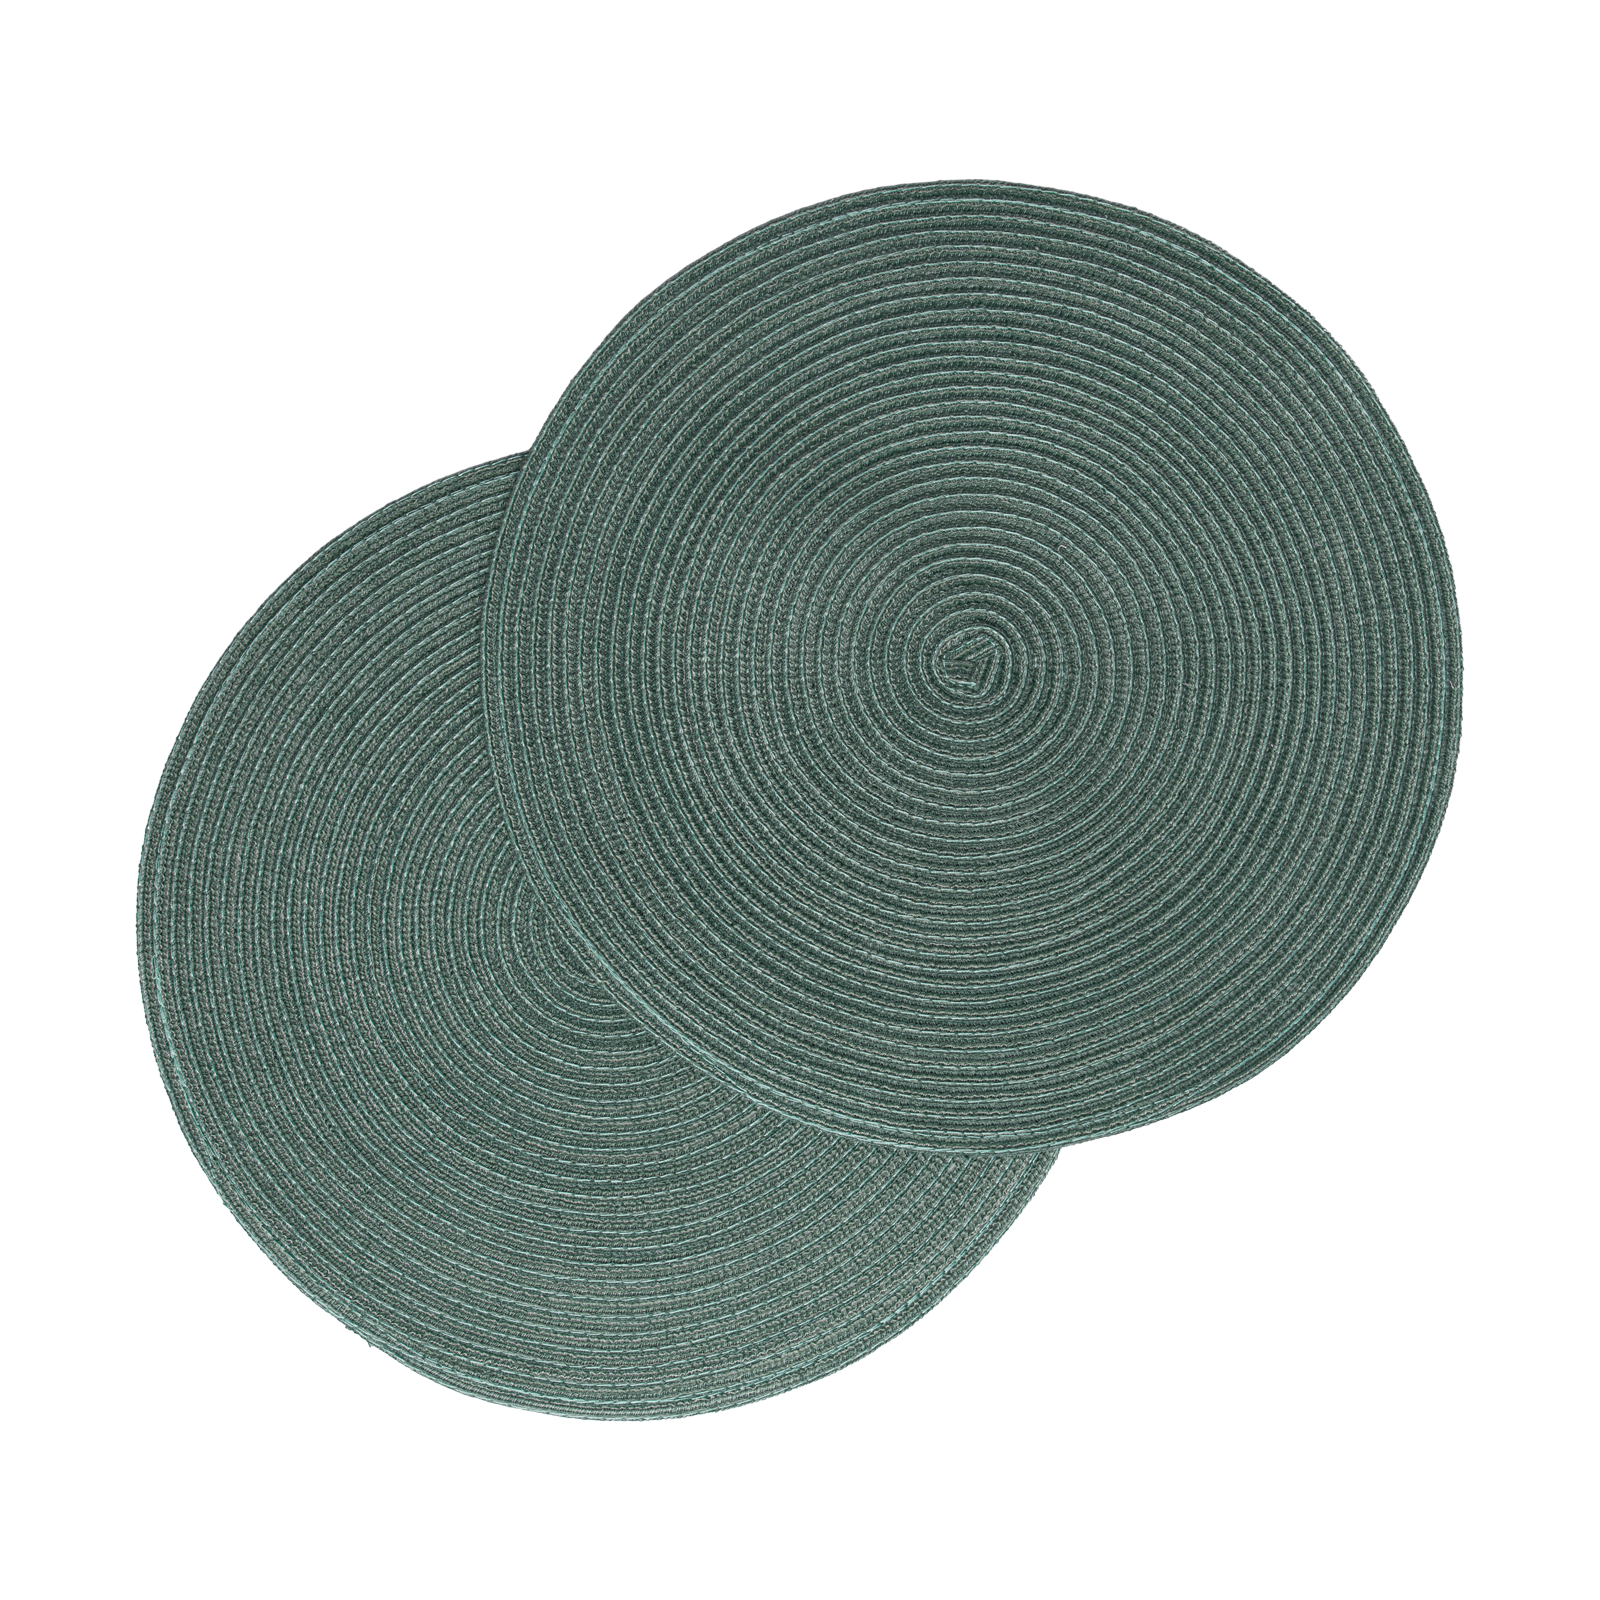 Größe: Ø38 cm Farbe: eukalyptus #farbe_eukalyptus